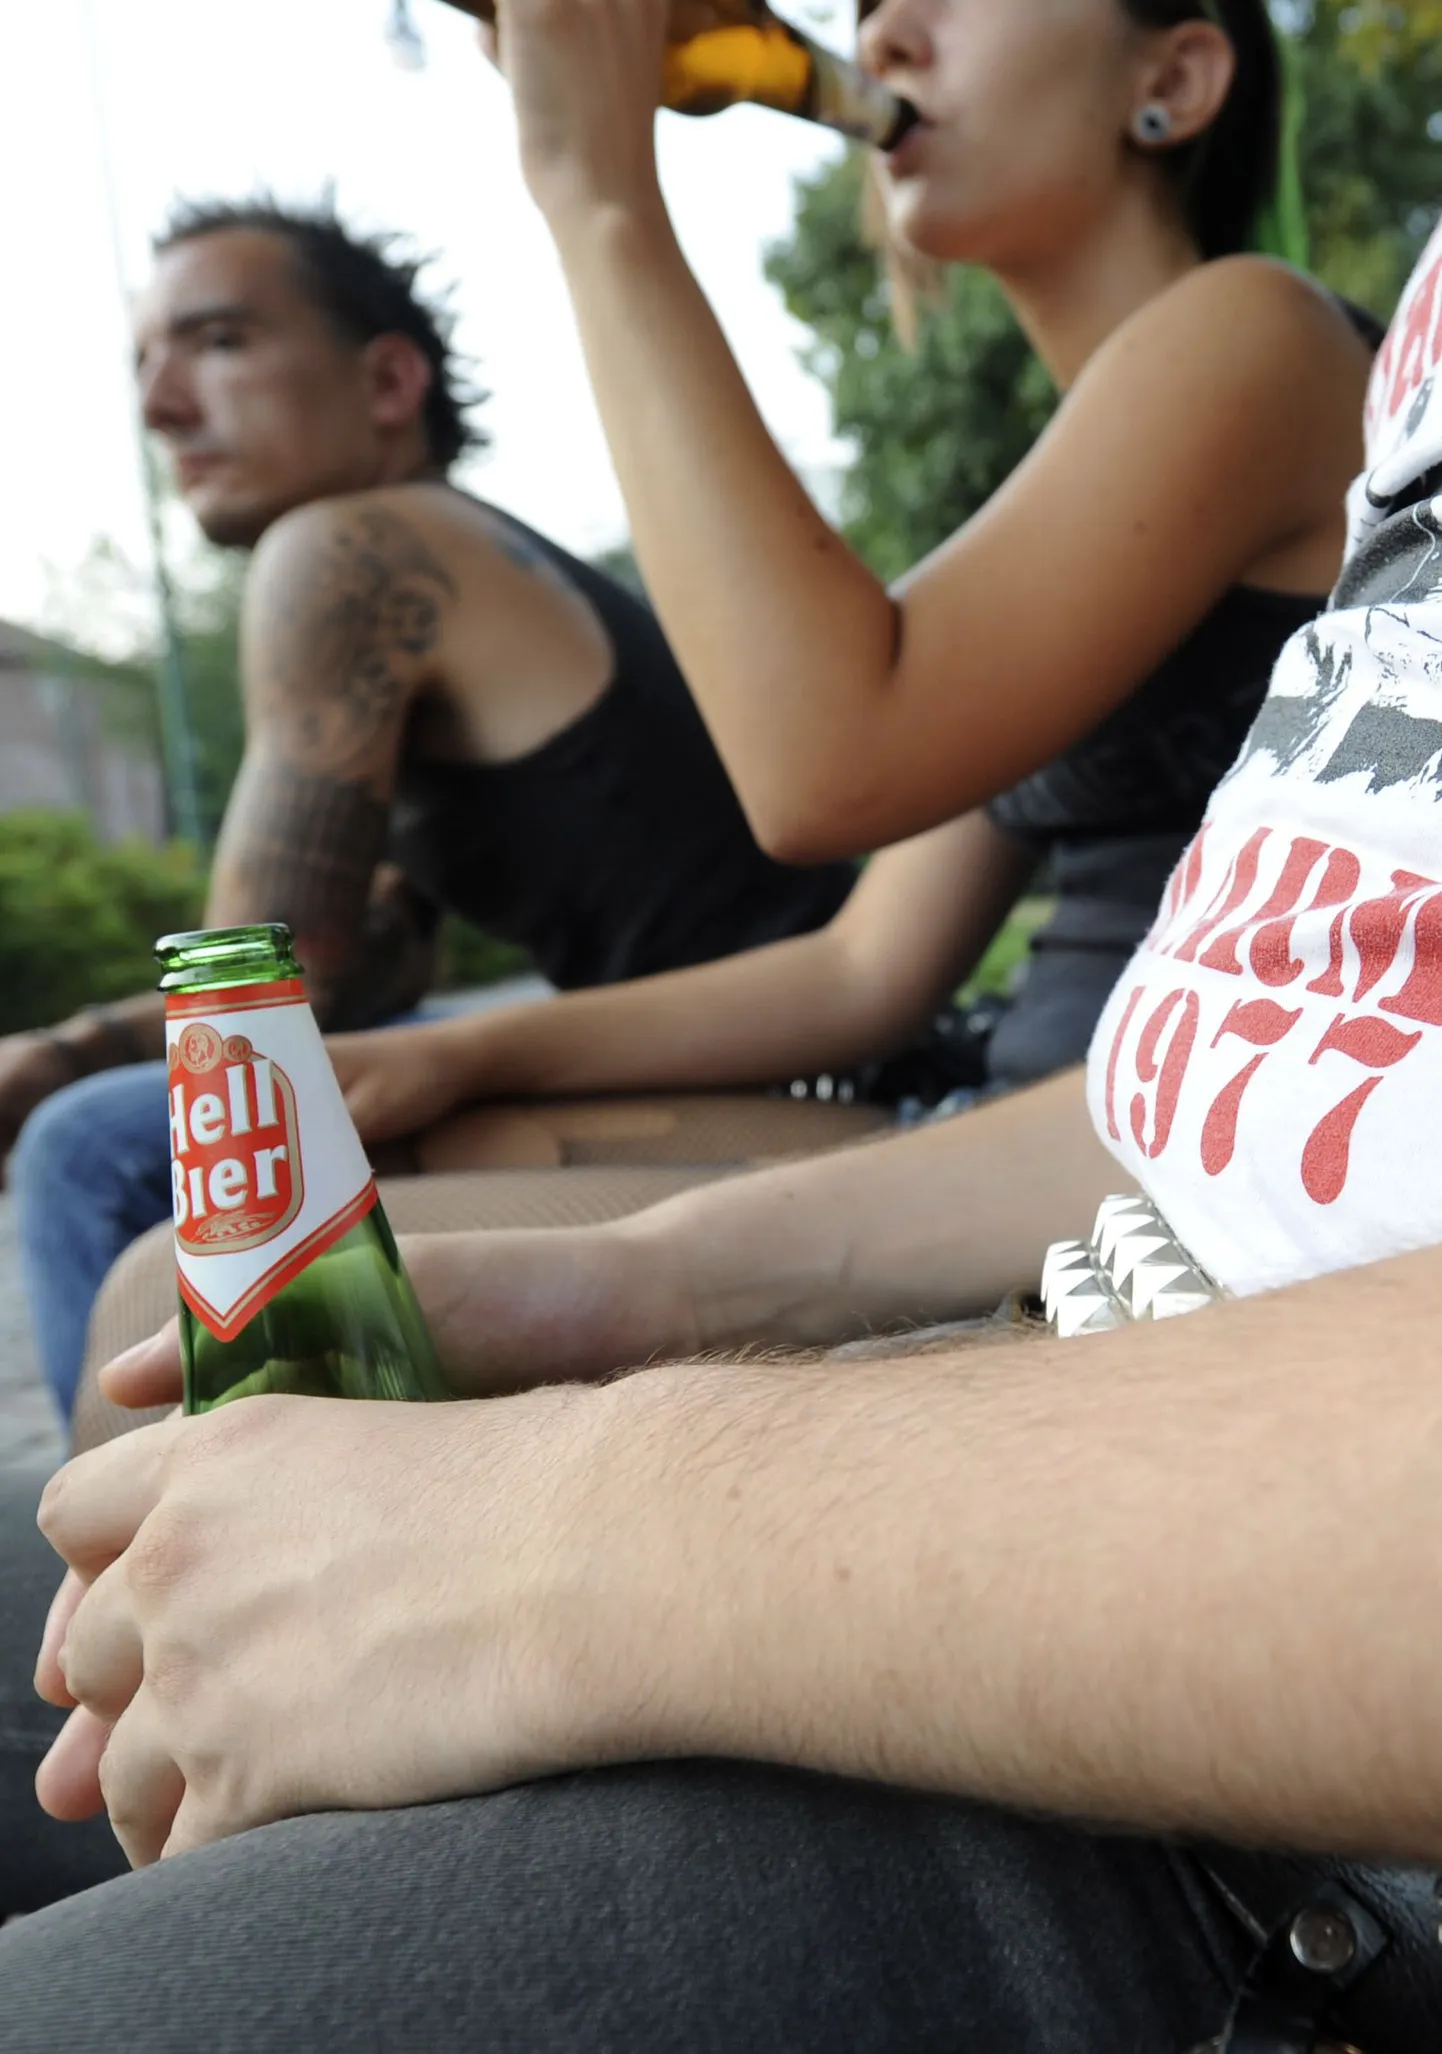 Noored tänavu augustis Milanos õlut nautimas. Itaalia äripealinnas karistatakse alaealisi alkoholipruukijaid alates juulist 7800 krooni suuruse trahviga.